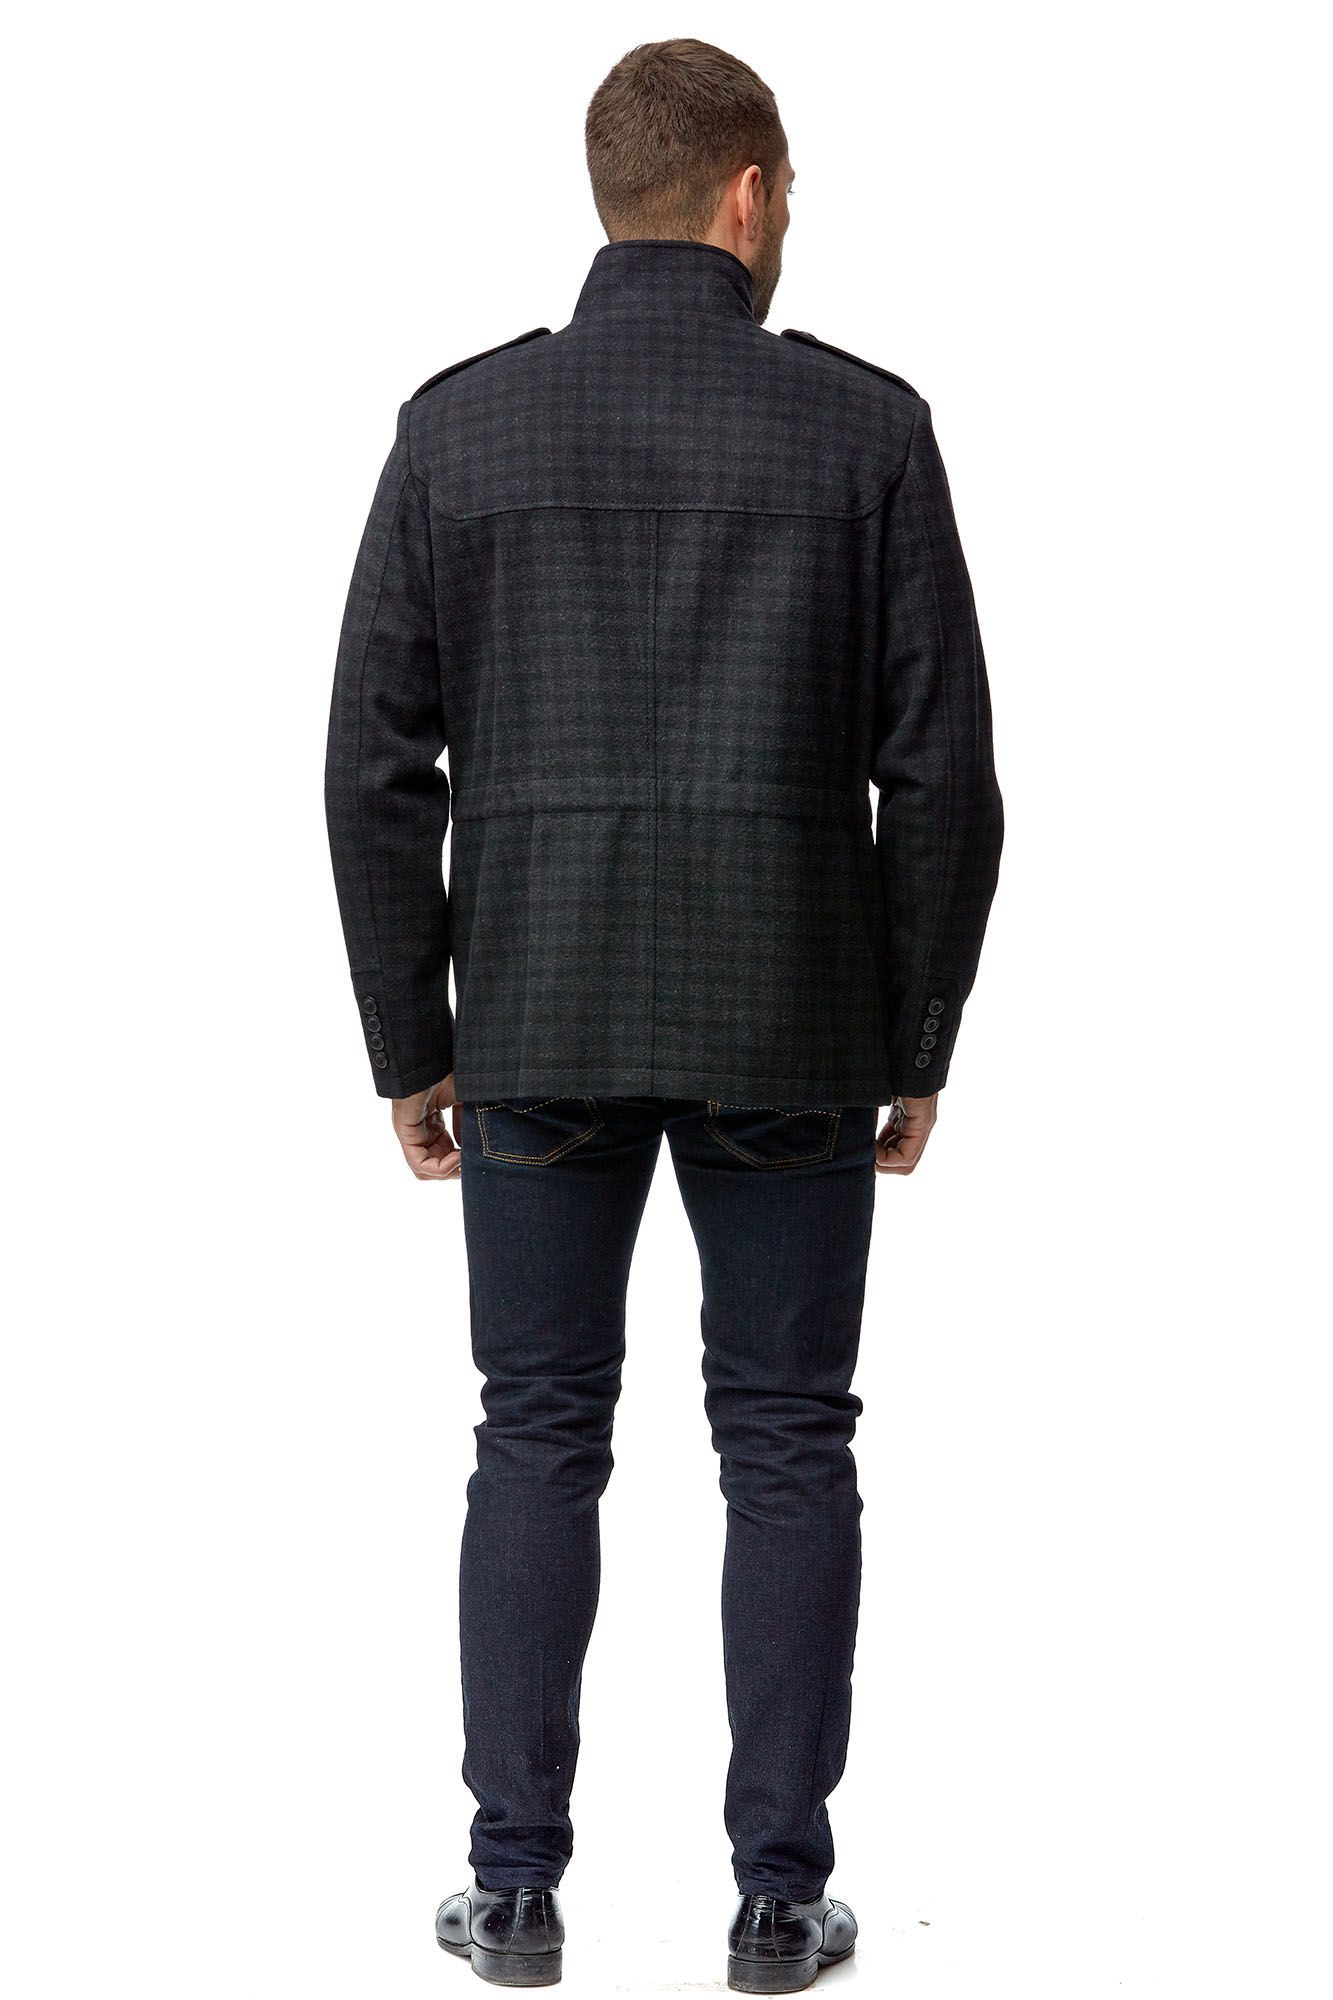 Мужское пальто из текстиля с воротником 8001797-3